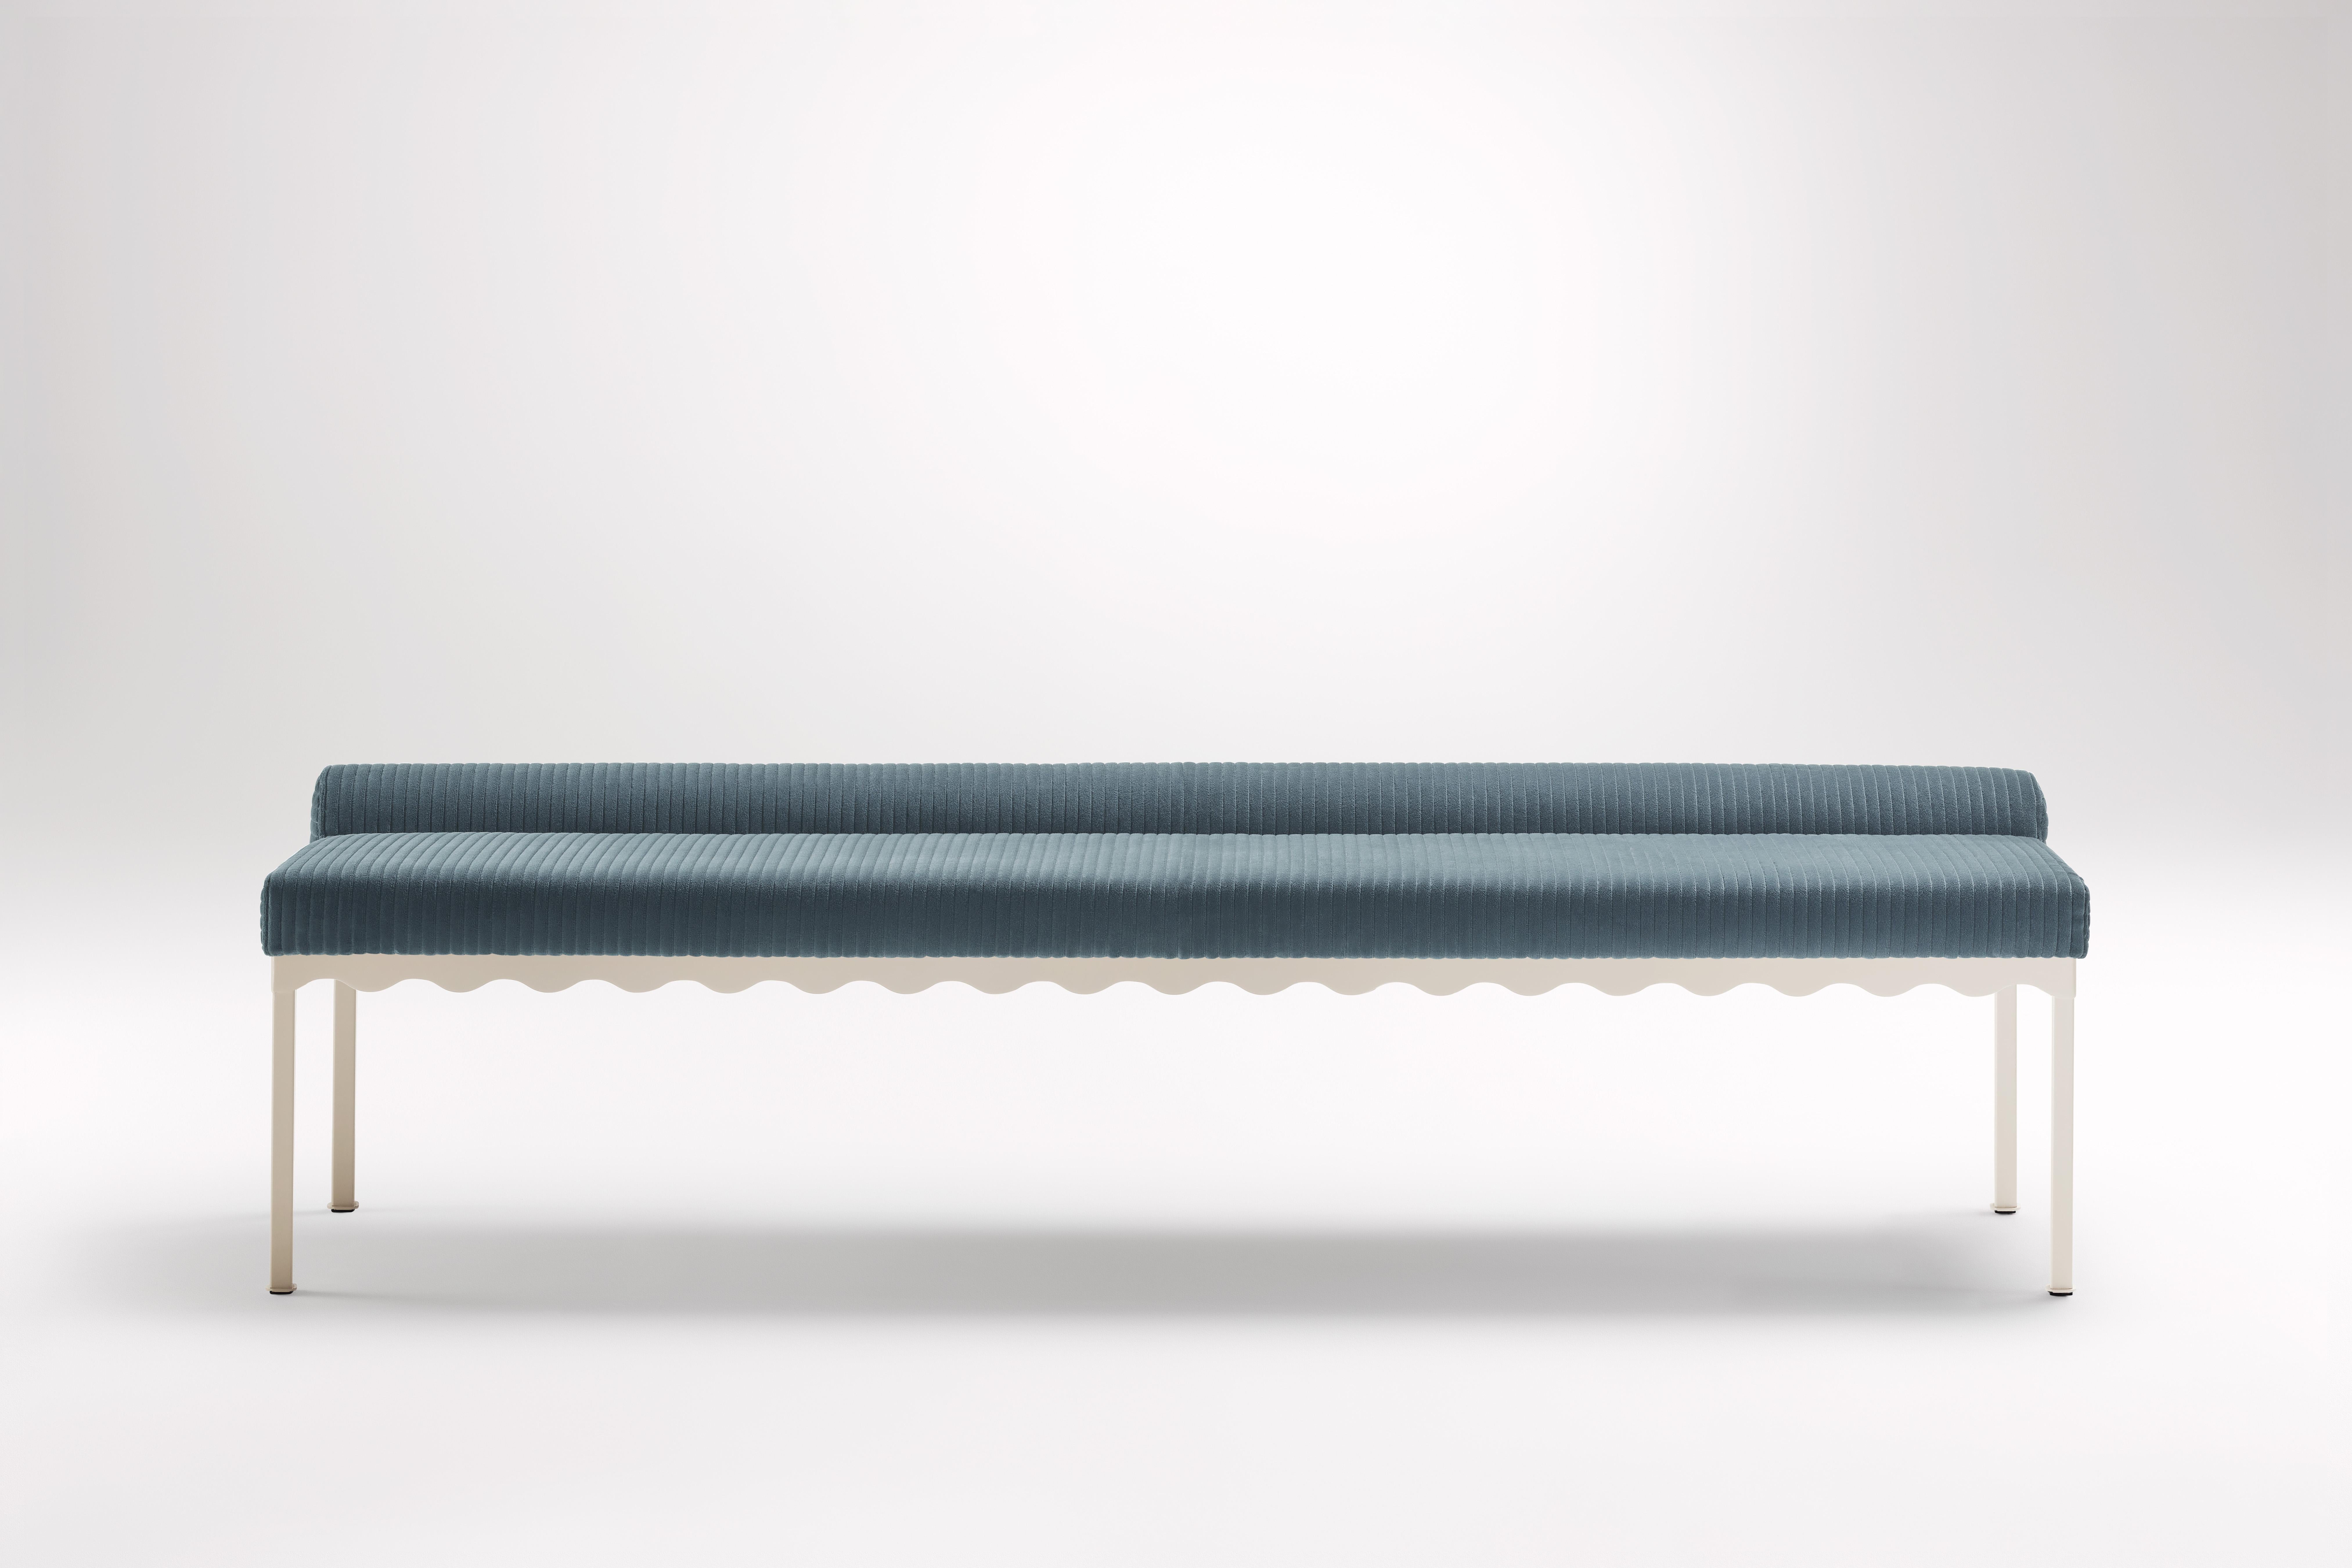 Oracle Bellini 2040 Bank von Coco Flip
Abmessungen: T 204 x B 54 x H 52,5 cm
MATERIALIEN: Holz / gepolsterte Platten, pulverbeschichteter Stahlrahmen. 
Gewicht: 30 kg
Rahmen-Oberflächen: Textura Paperbark.

Coco Flip ist ein Studio für Möbel- und